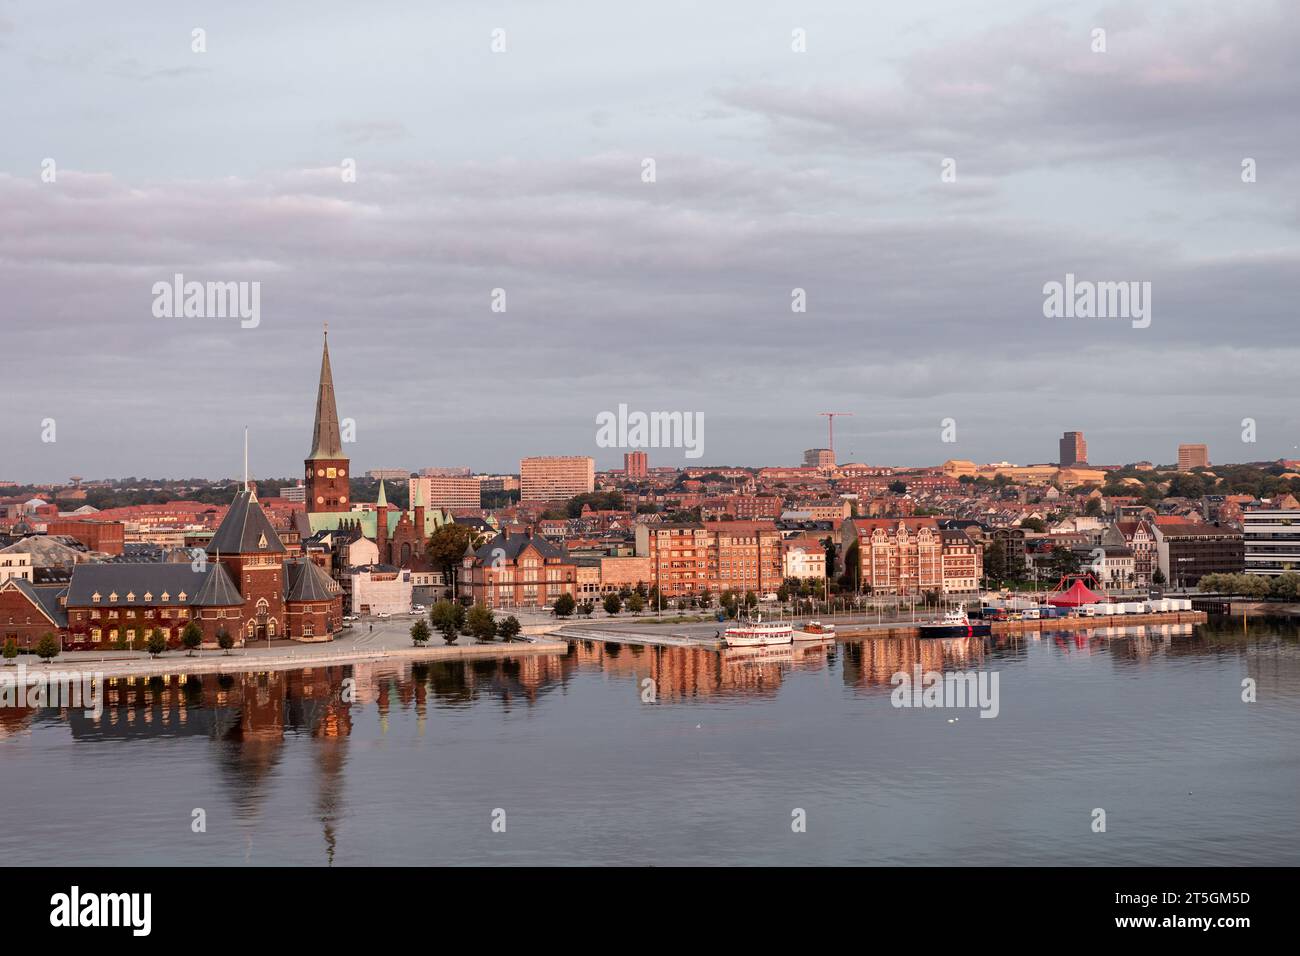 Aarhus, Dänemark: Aus der Vogelperspektive auf die Uferpromenade mit der Kathedrale von Aarhus und dem historischen Gebäude Toldboden Stockfoto